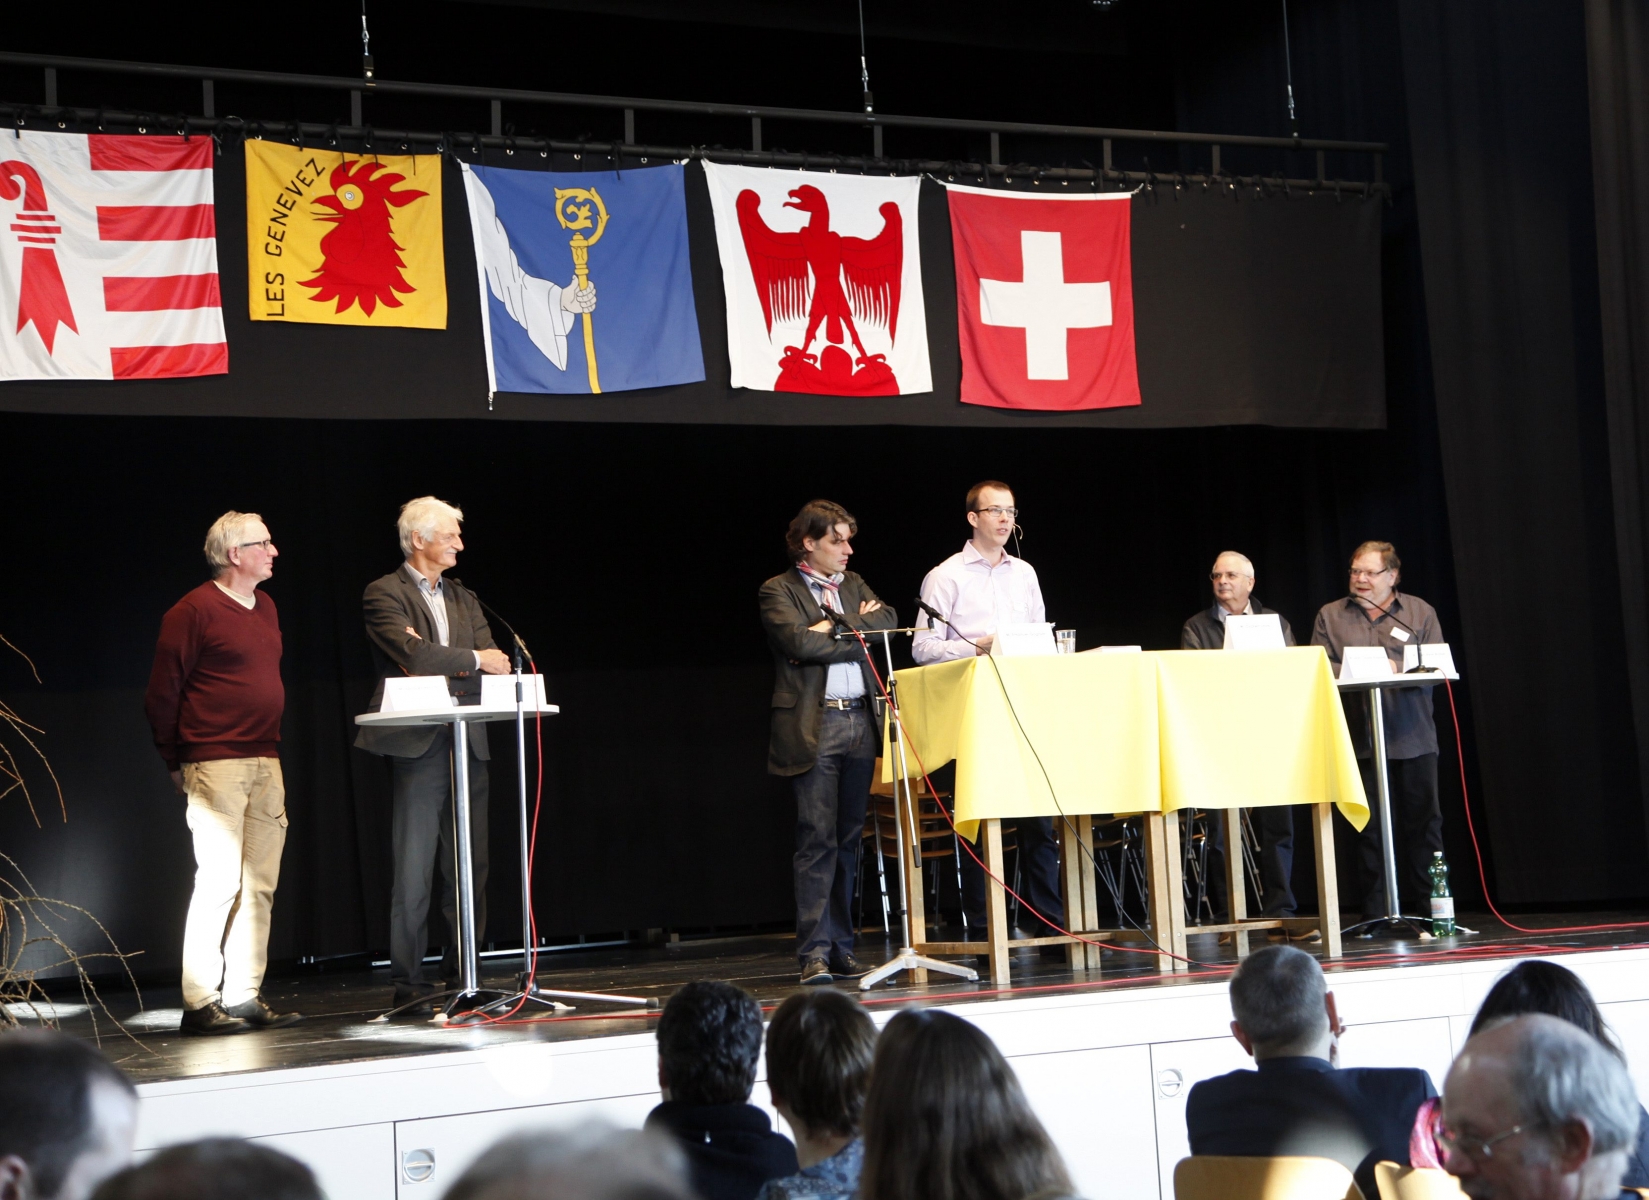 Les participants à la table ronde organisée vendredi à Montfaucon. On reconnaît, en 2e depuis la gauche, l'ancien ministre Jean-Pierre Beuret, un militant franc-montagnard de la première heure.